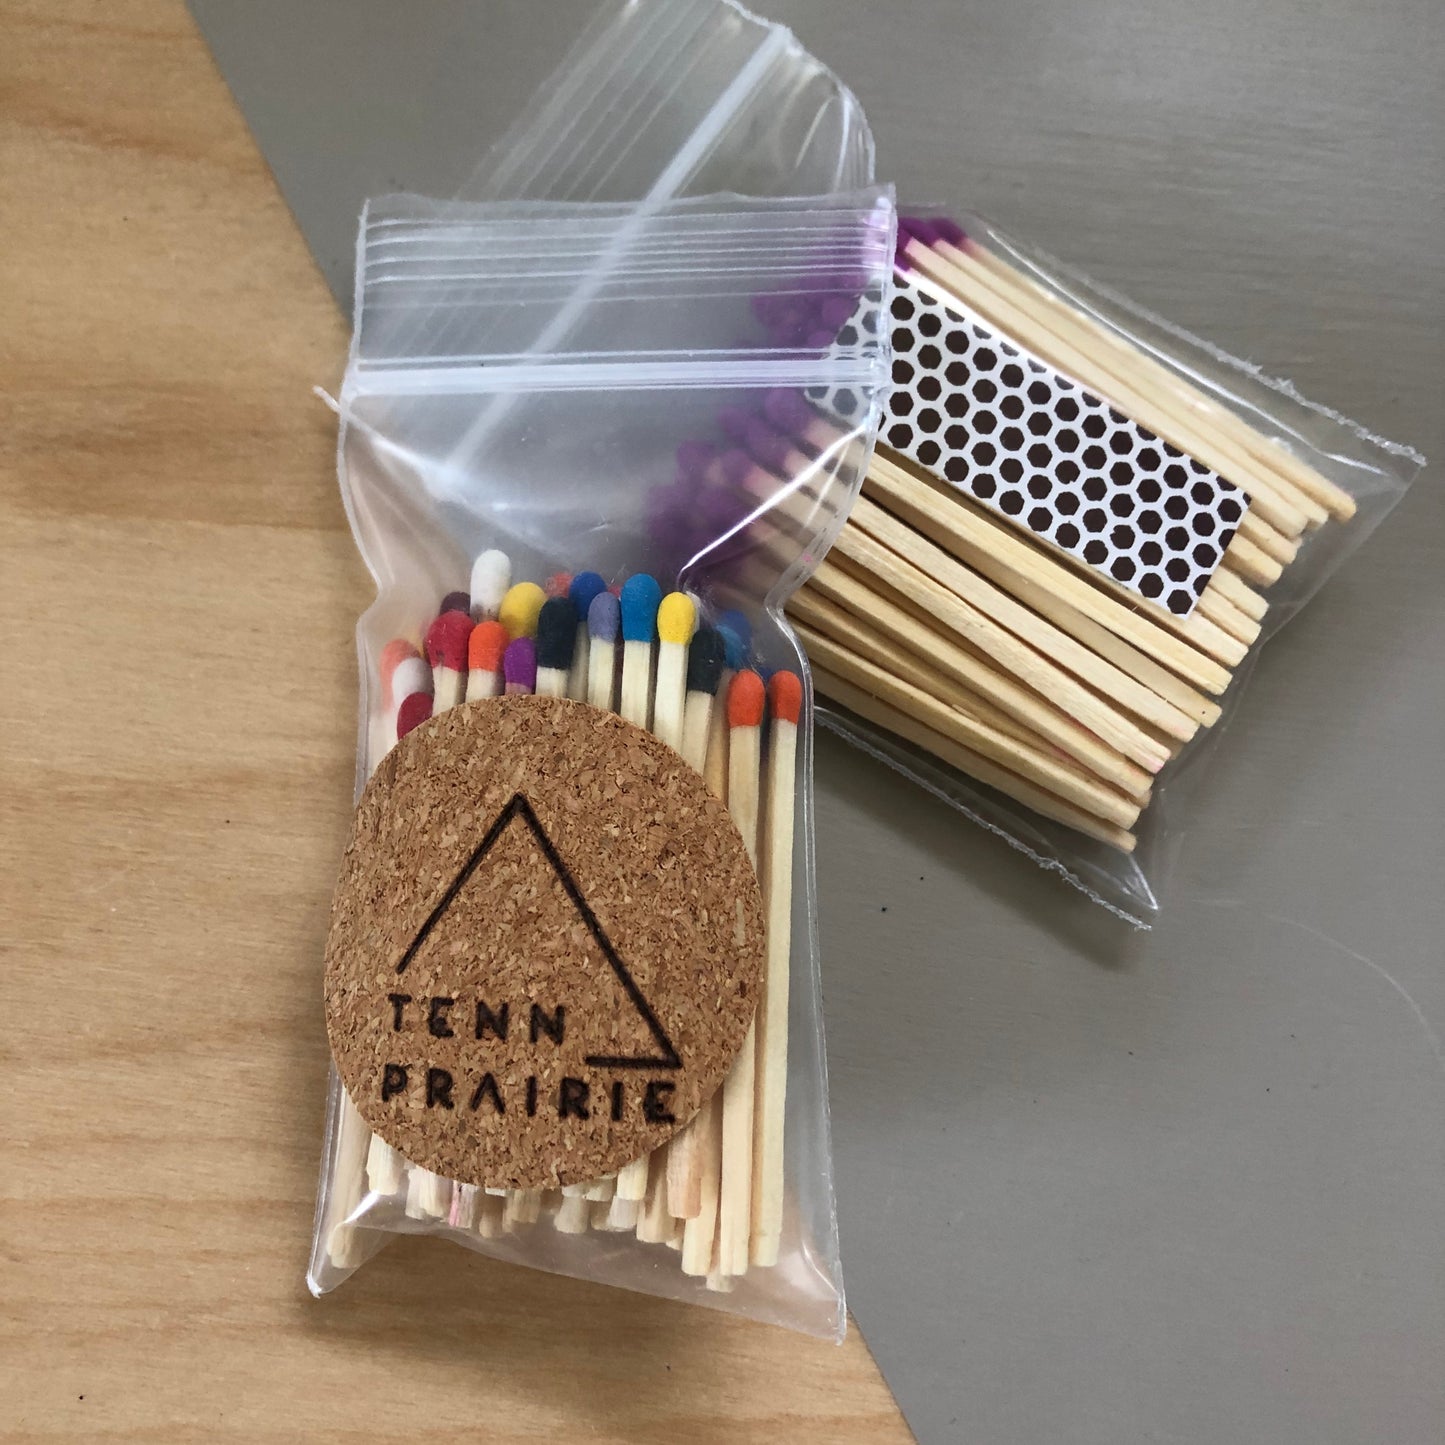 Tenn Prairie Match Refill Kit